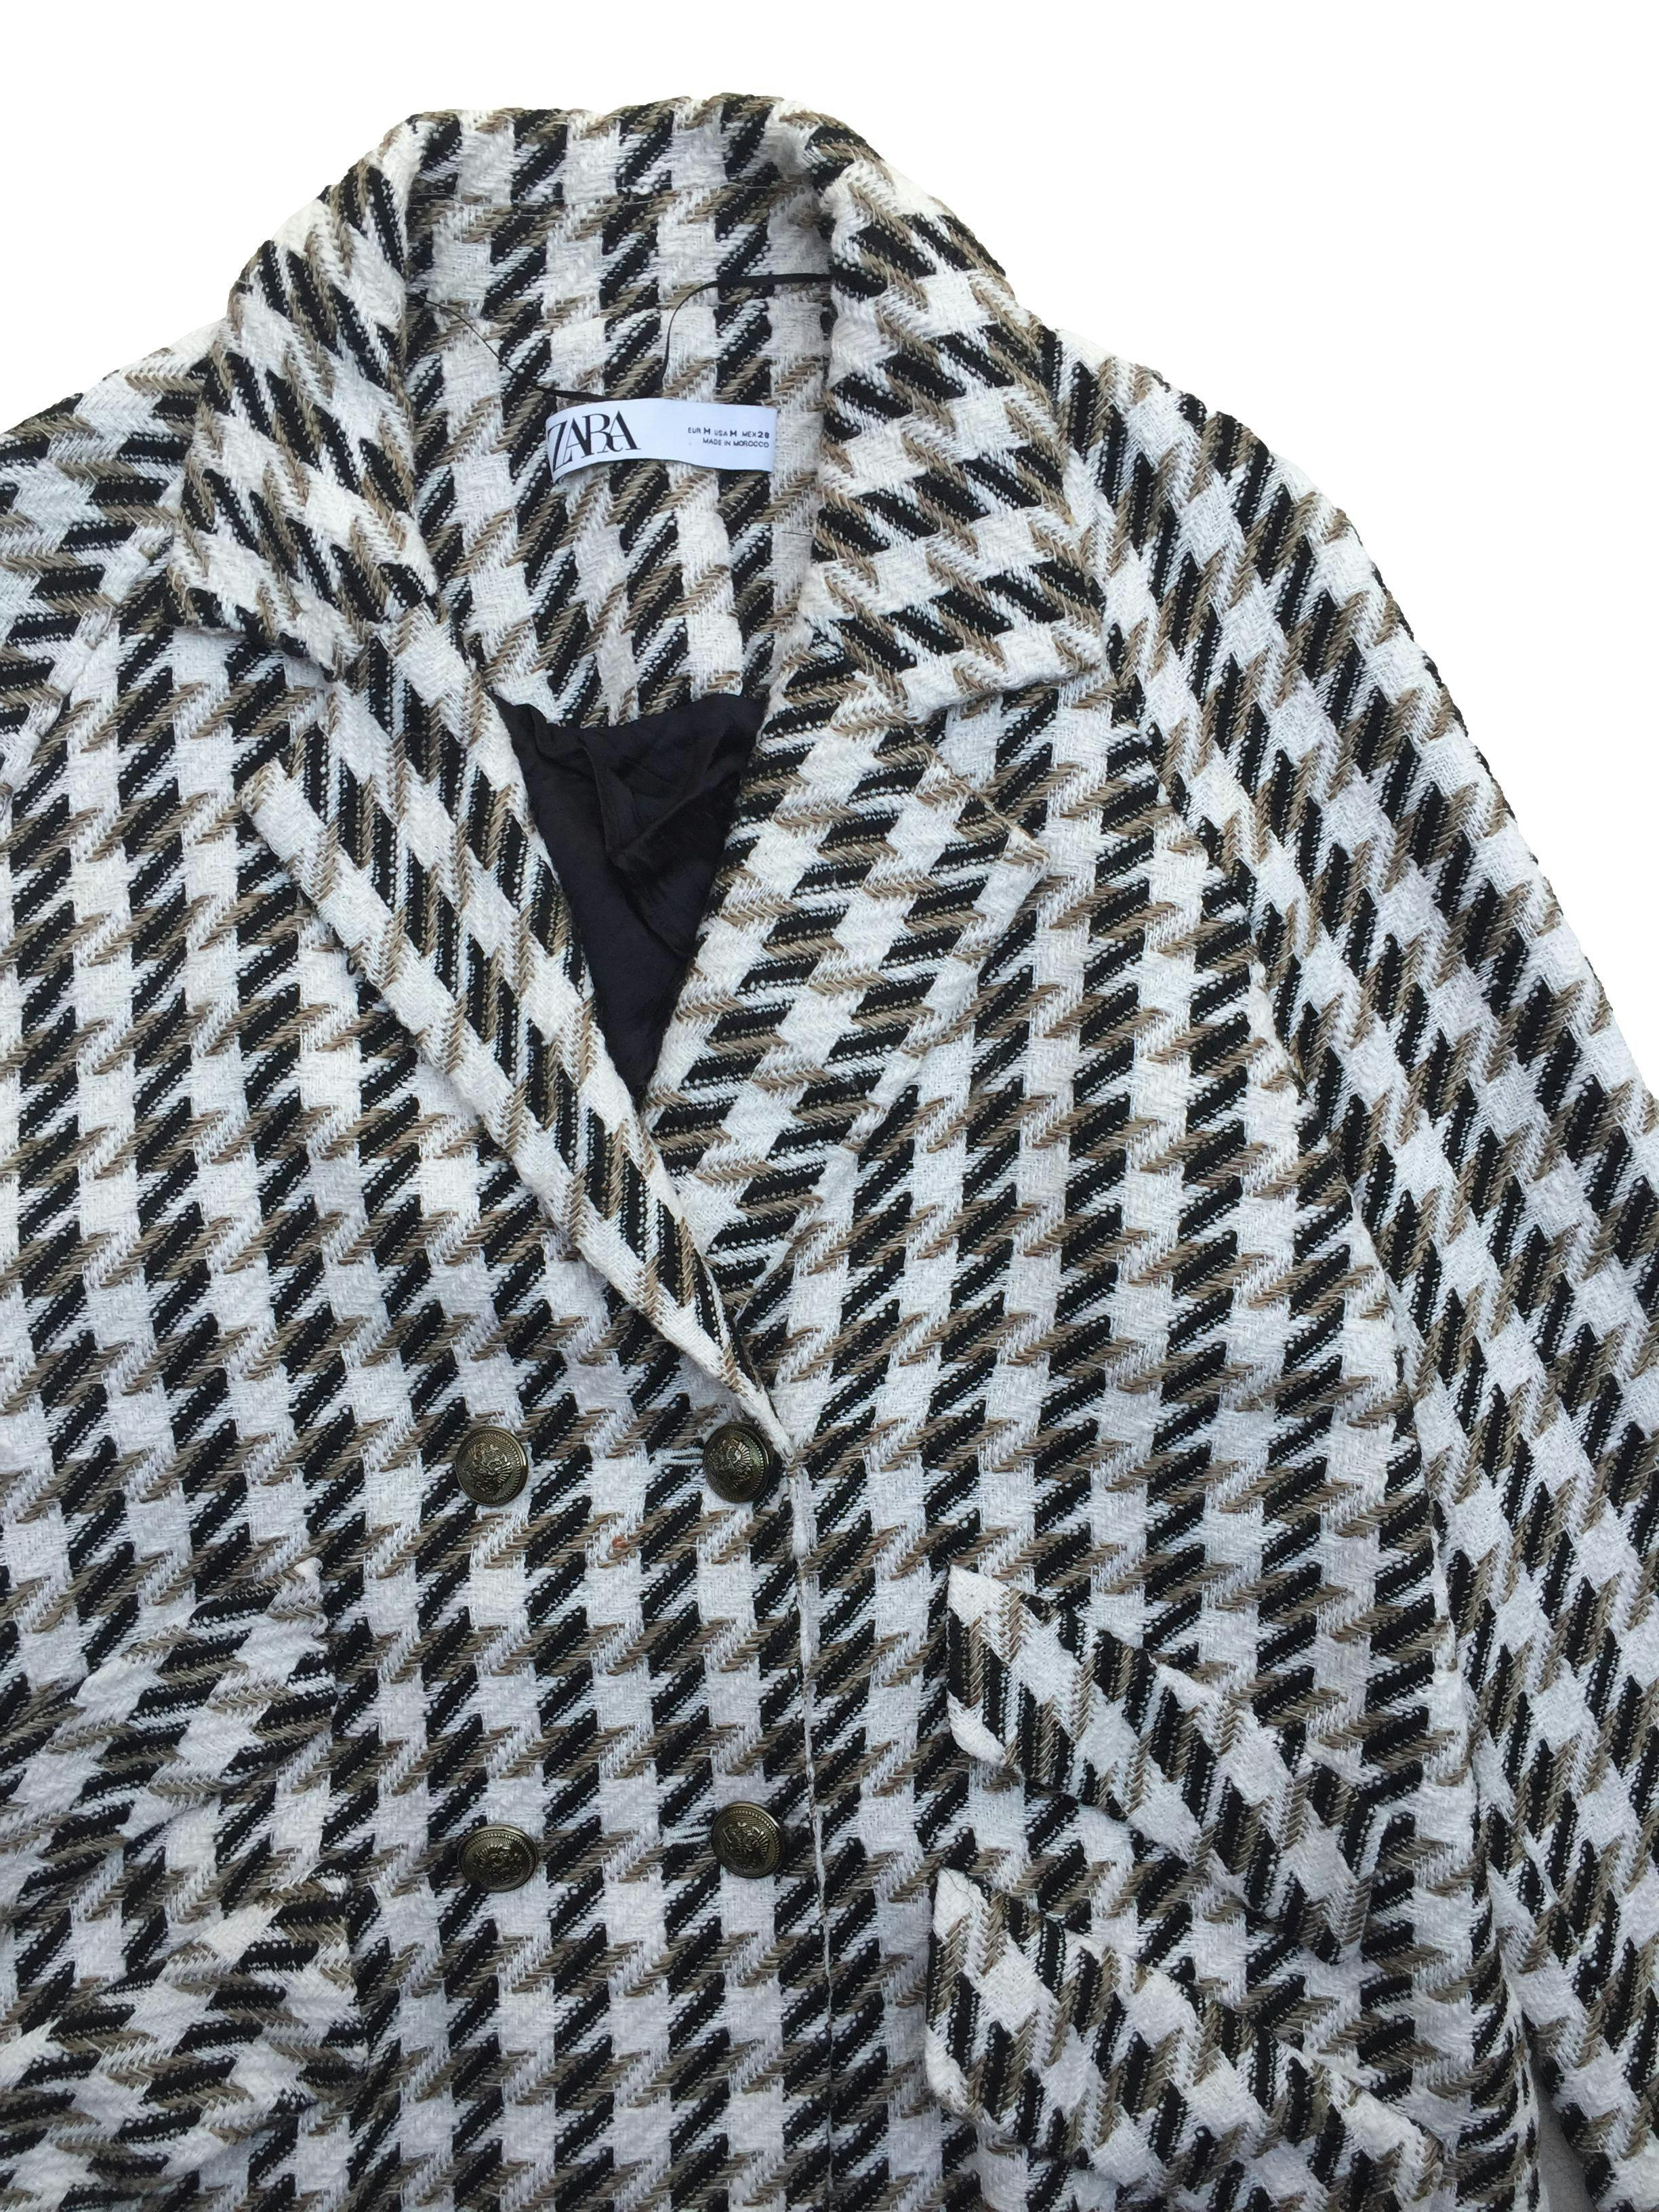 Abrigo Zara de tweed crema negro y marrón, corte oversized, doble fila de botones y bolsillos. Busto 110cm Largo 90cm